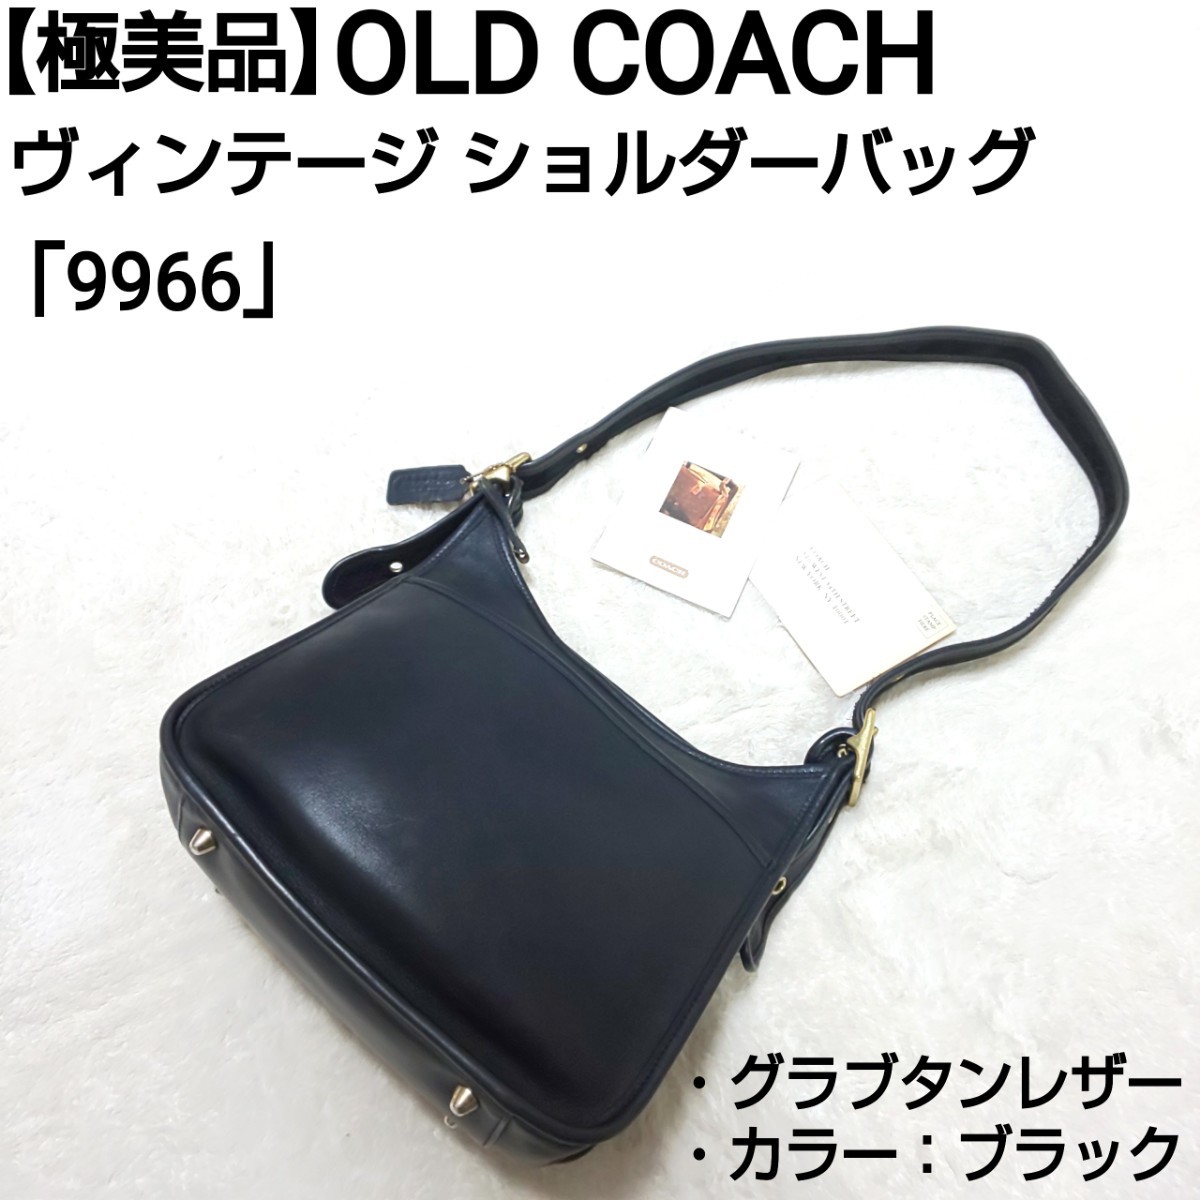 【極美品】OLD COACH オールドコーチ ヴィンテージ ショルダーバッグ グラブタンレザー 9966 ユニセックス 男女兼用 ブラック 黒